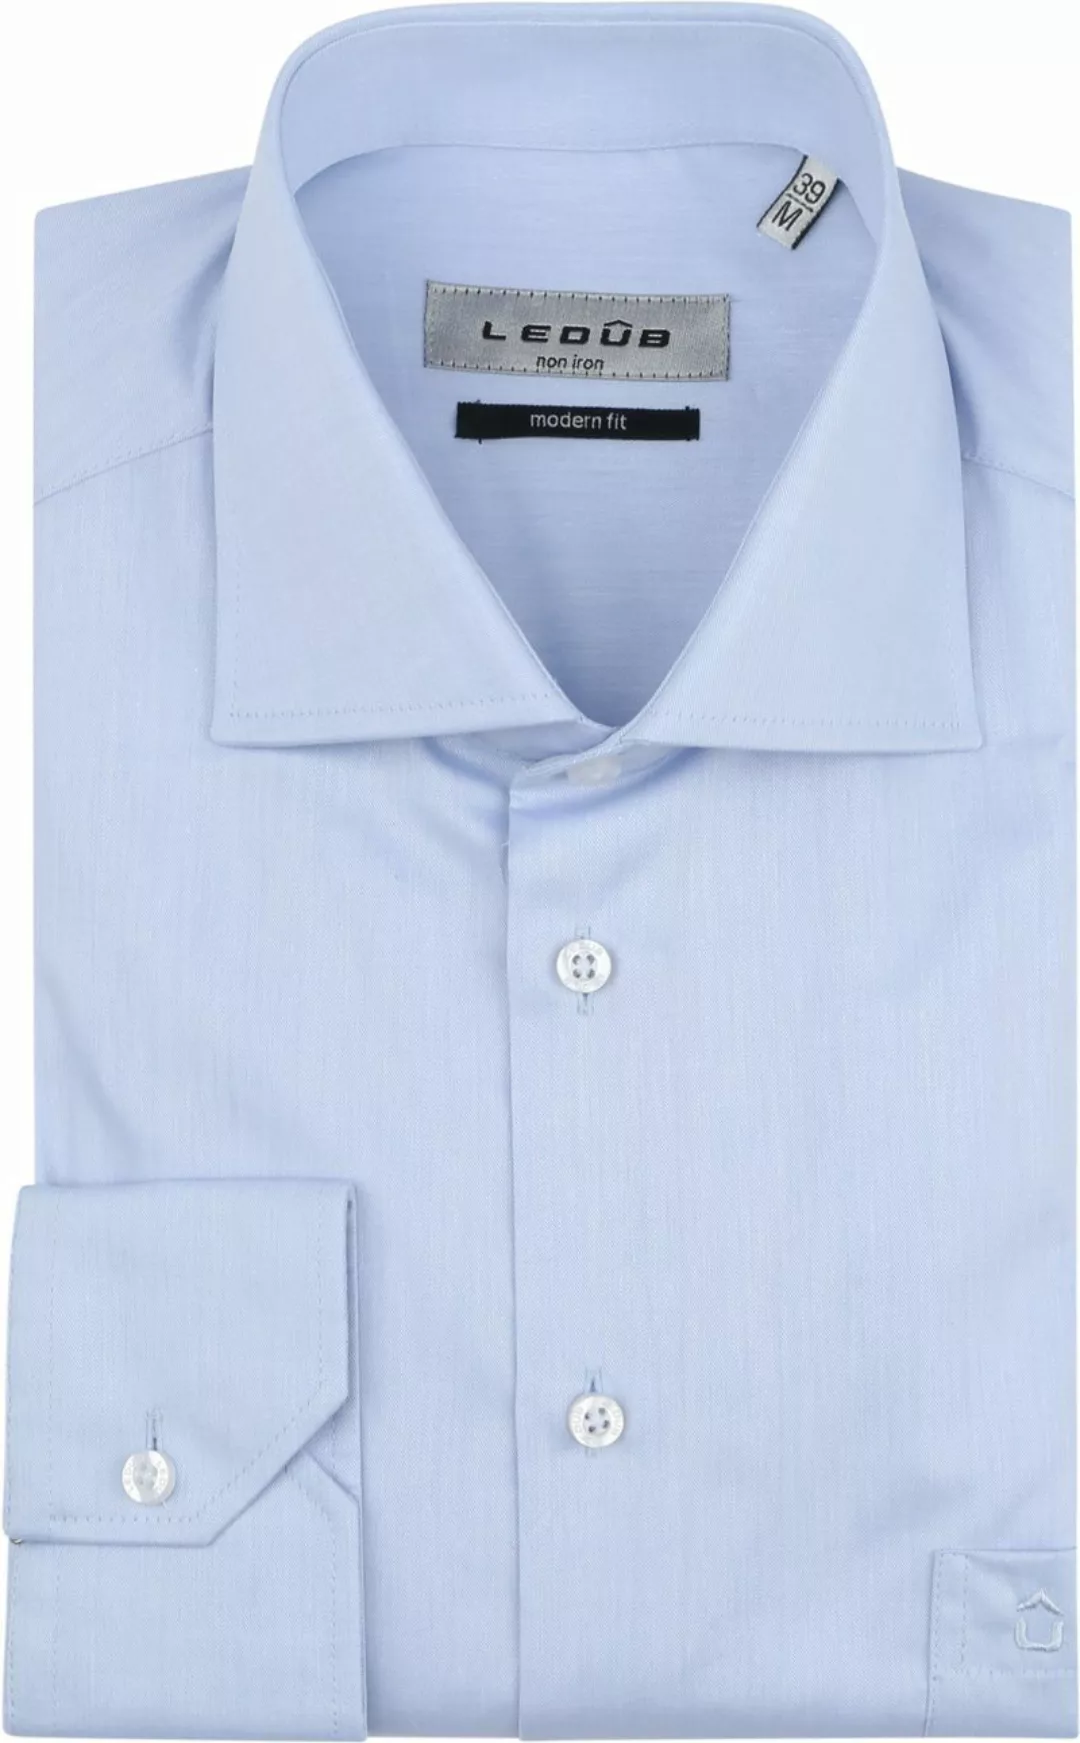 Ledub Hemd Hellblau Brusttassche - Größe 41 günstig online kaufen